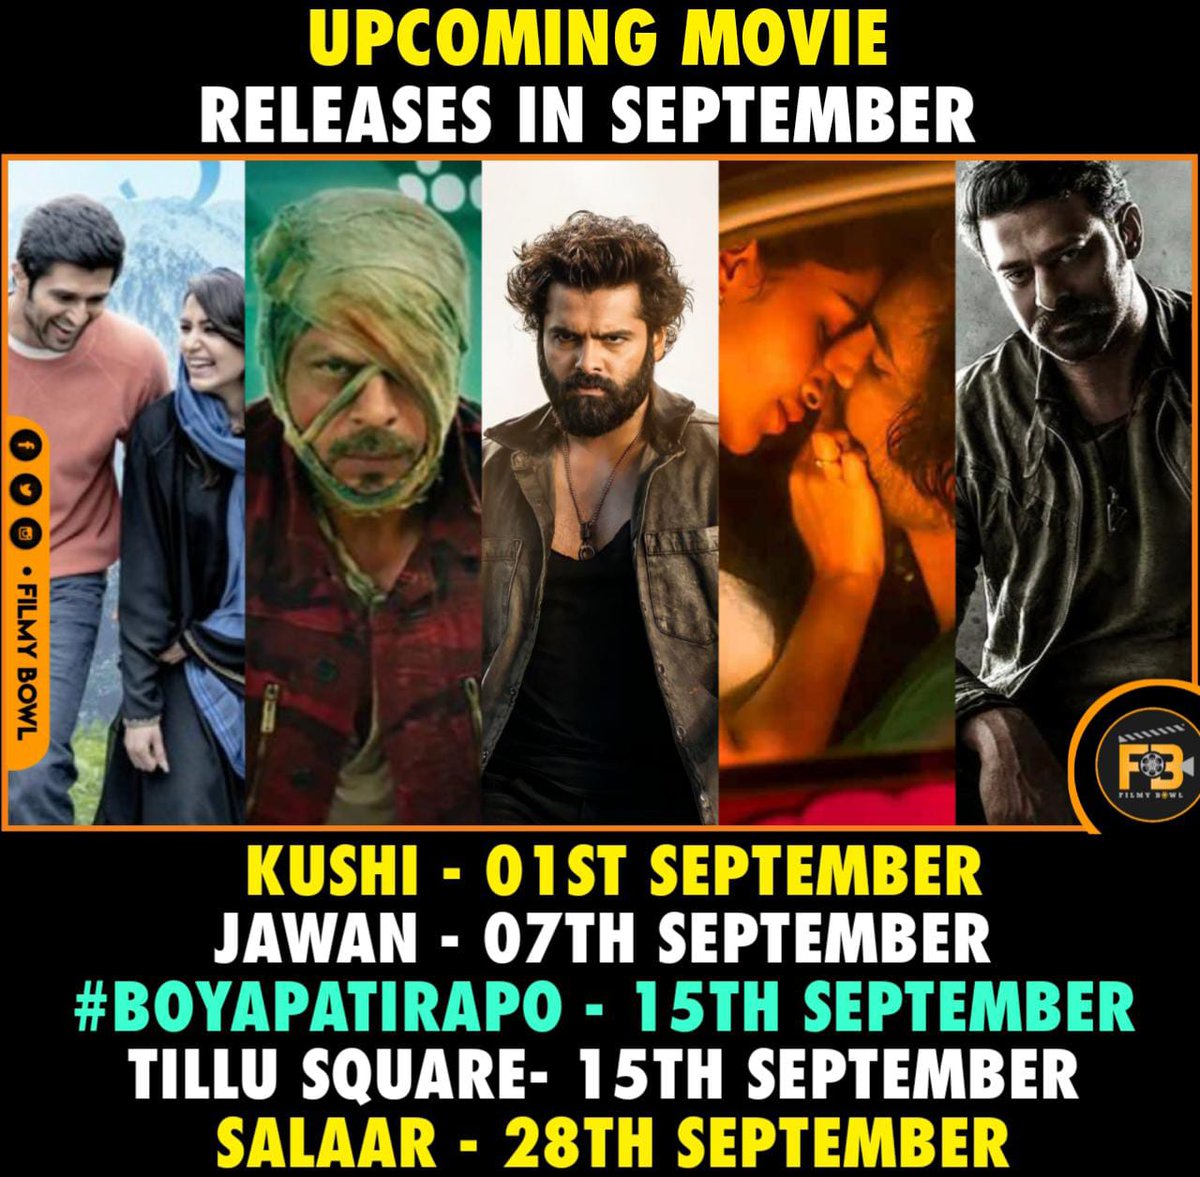 Upcoming movie releases in September

#Kushi #Jawaan #BoyapatiRAPO #tillusquare #Salaar #Prabhas

#FilmyBowl @SatishKTweets